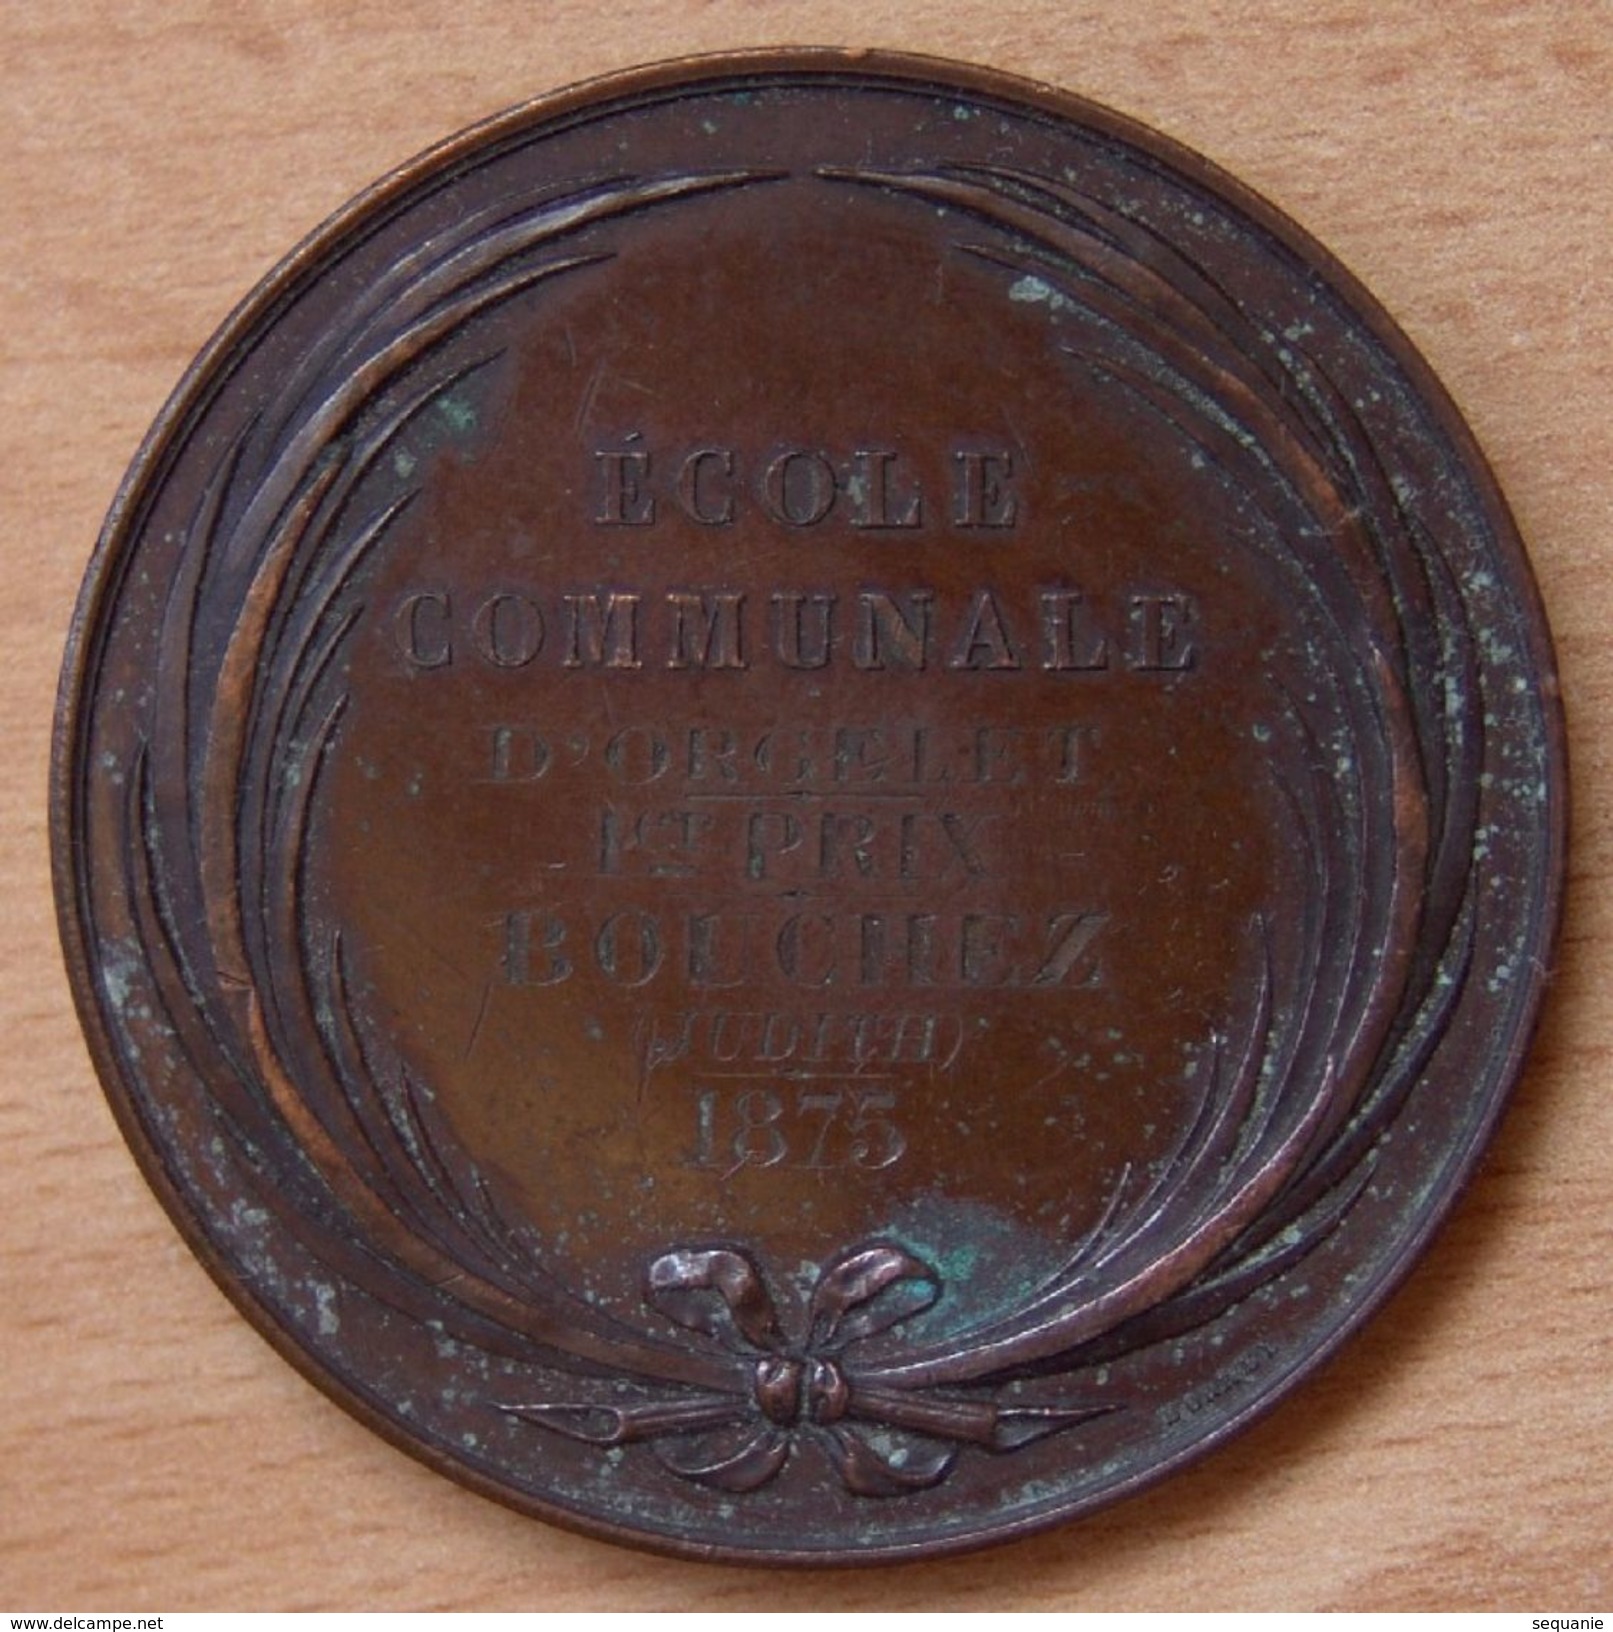 Médaille Ecole Communale D'Orgelet (Jura) 1 Er Prix B J 1875 - Professionnels / De Société